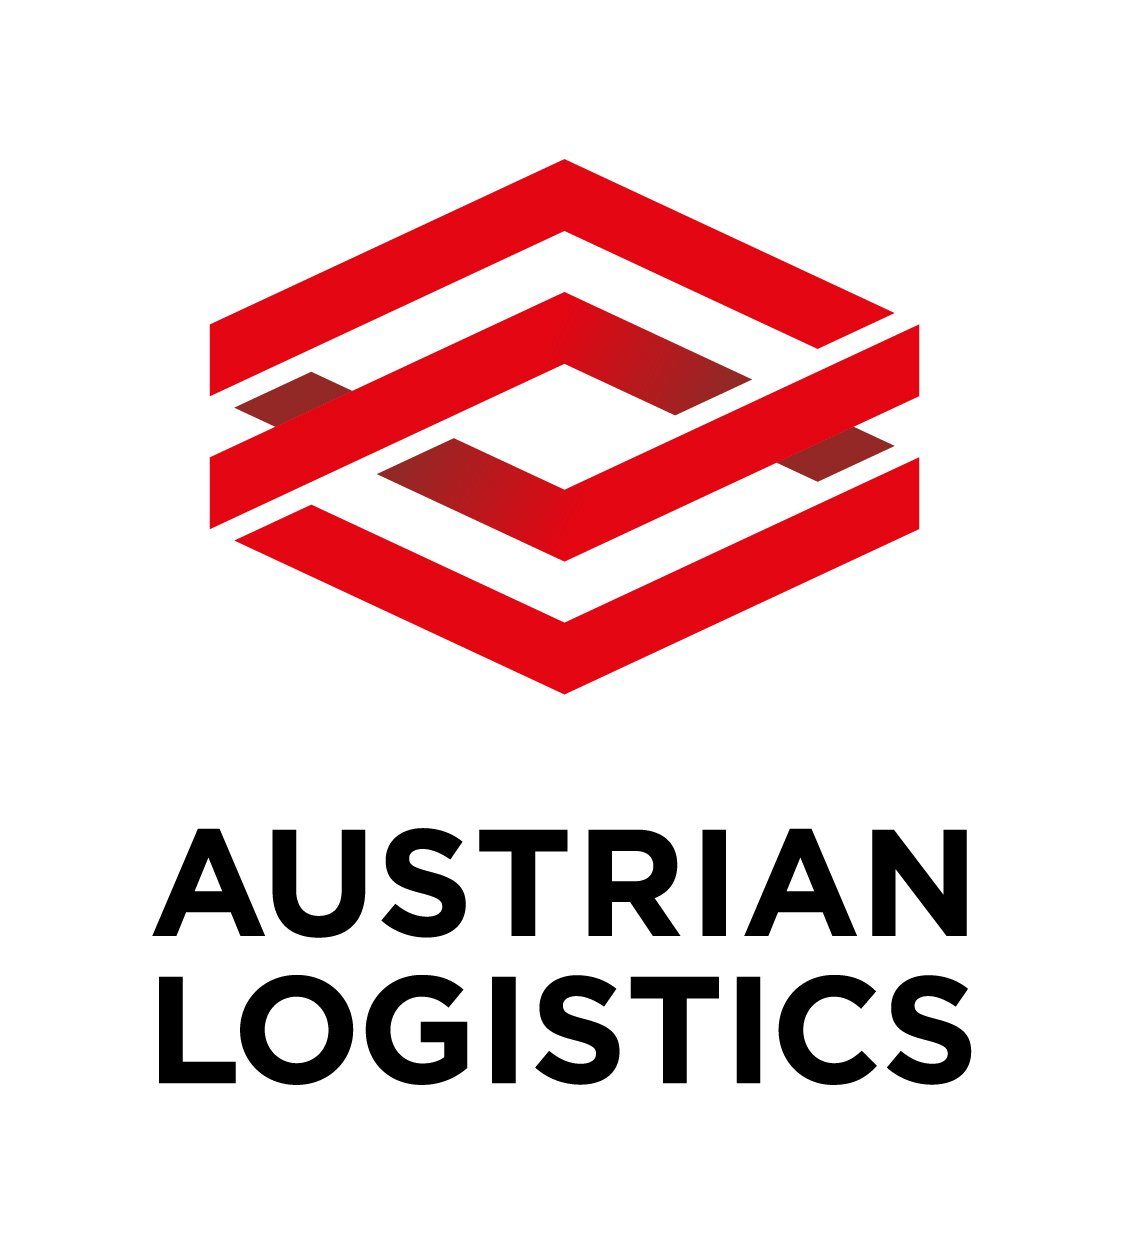 Dachmarke AUSTRIAN LOGISTICS steht für Exzellenz und Innovation in der Disziplin Logistik.